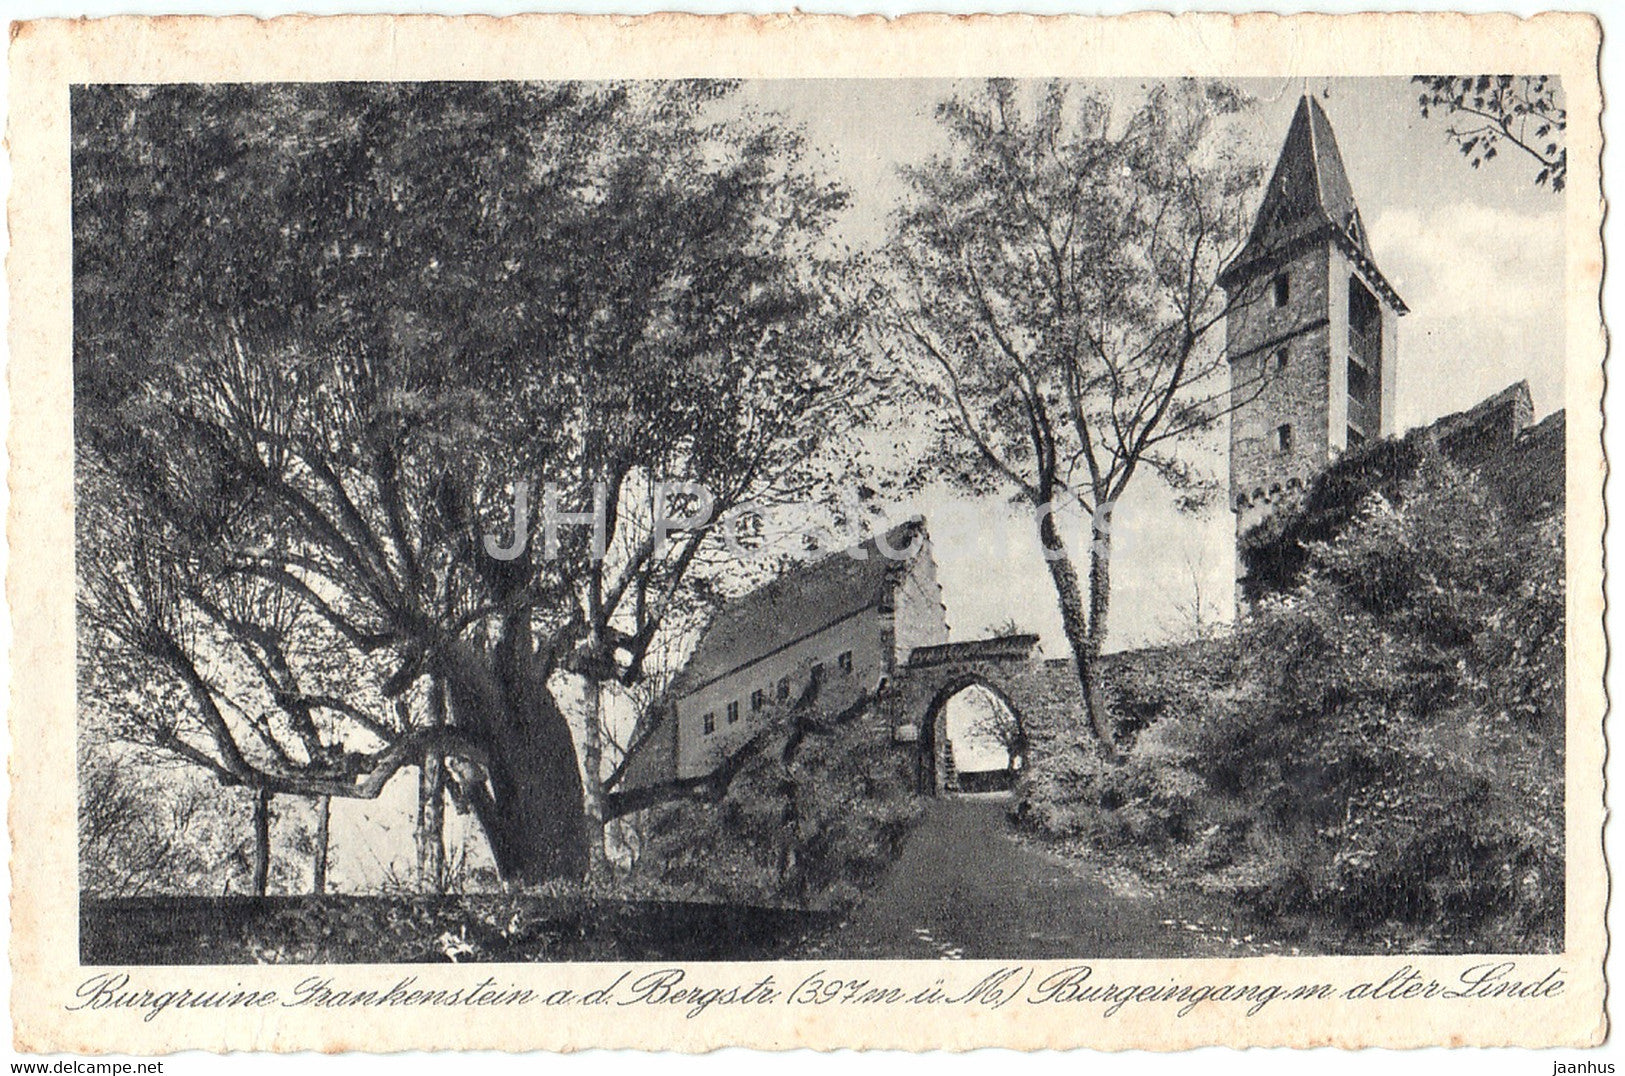 Burgruine Frankenstein a d Bergstr 397 m - Burgeingang alter Linde - old postcard - Germany - used - JH Postcards